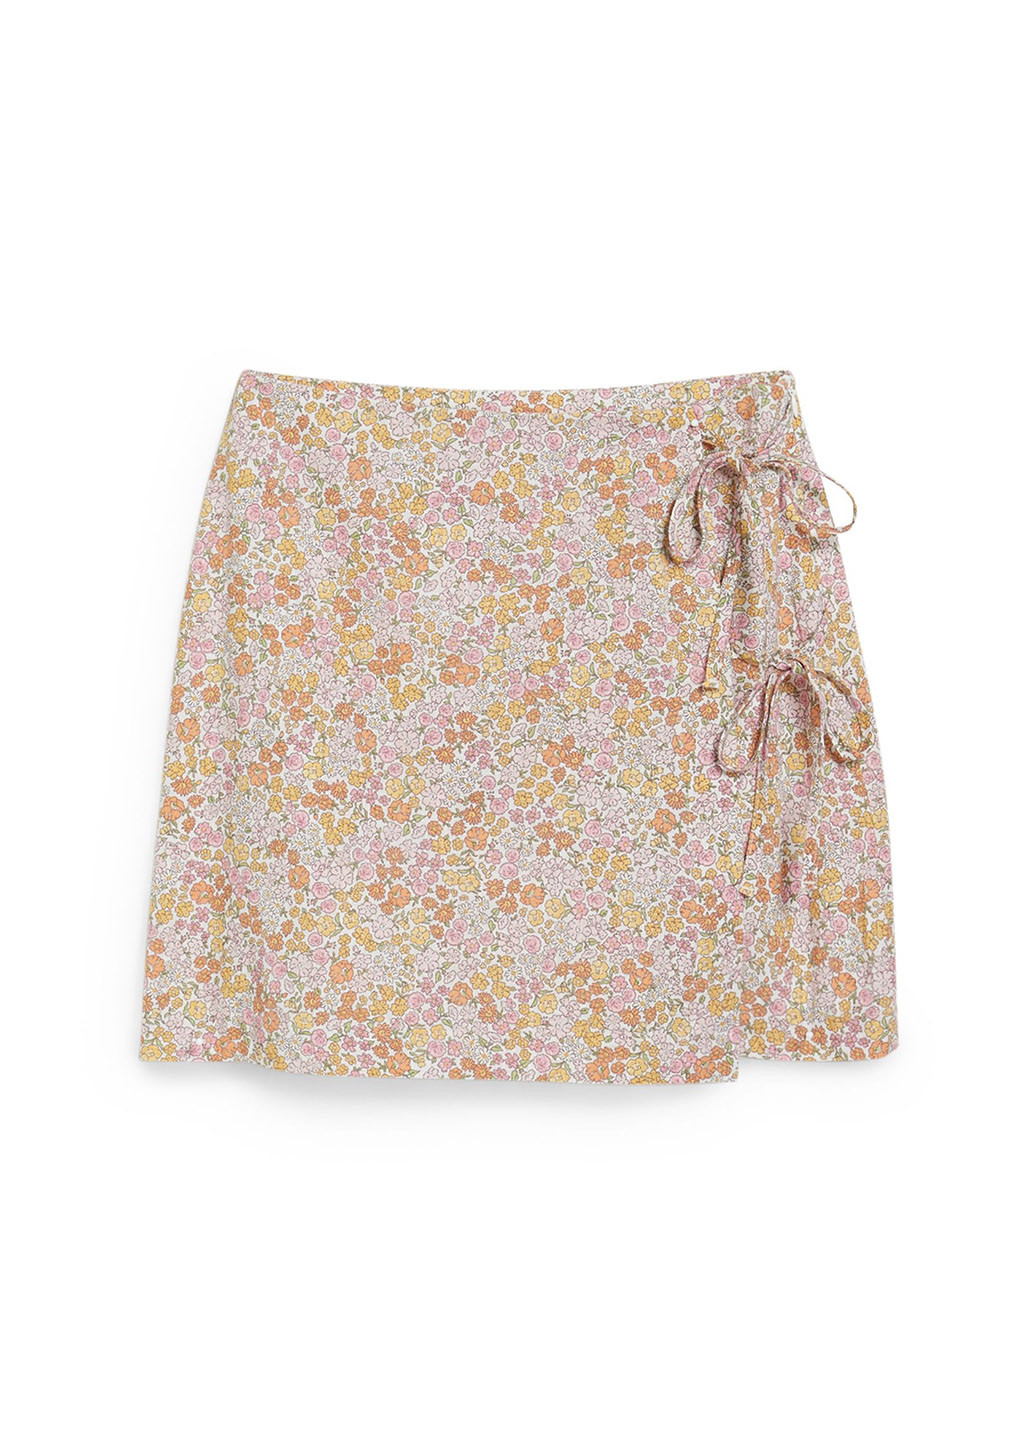 Разноцветная кэжуал цветочной расцветки юбка C&A на запах